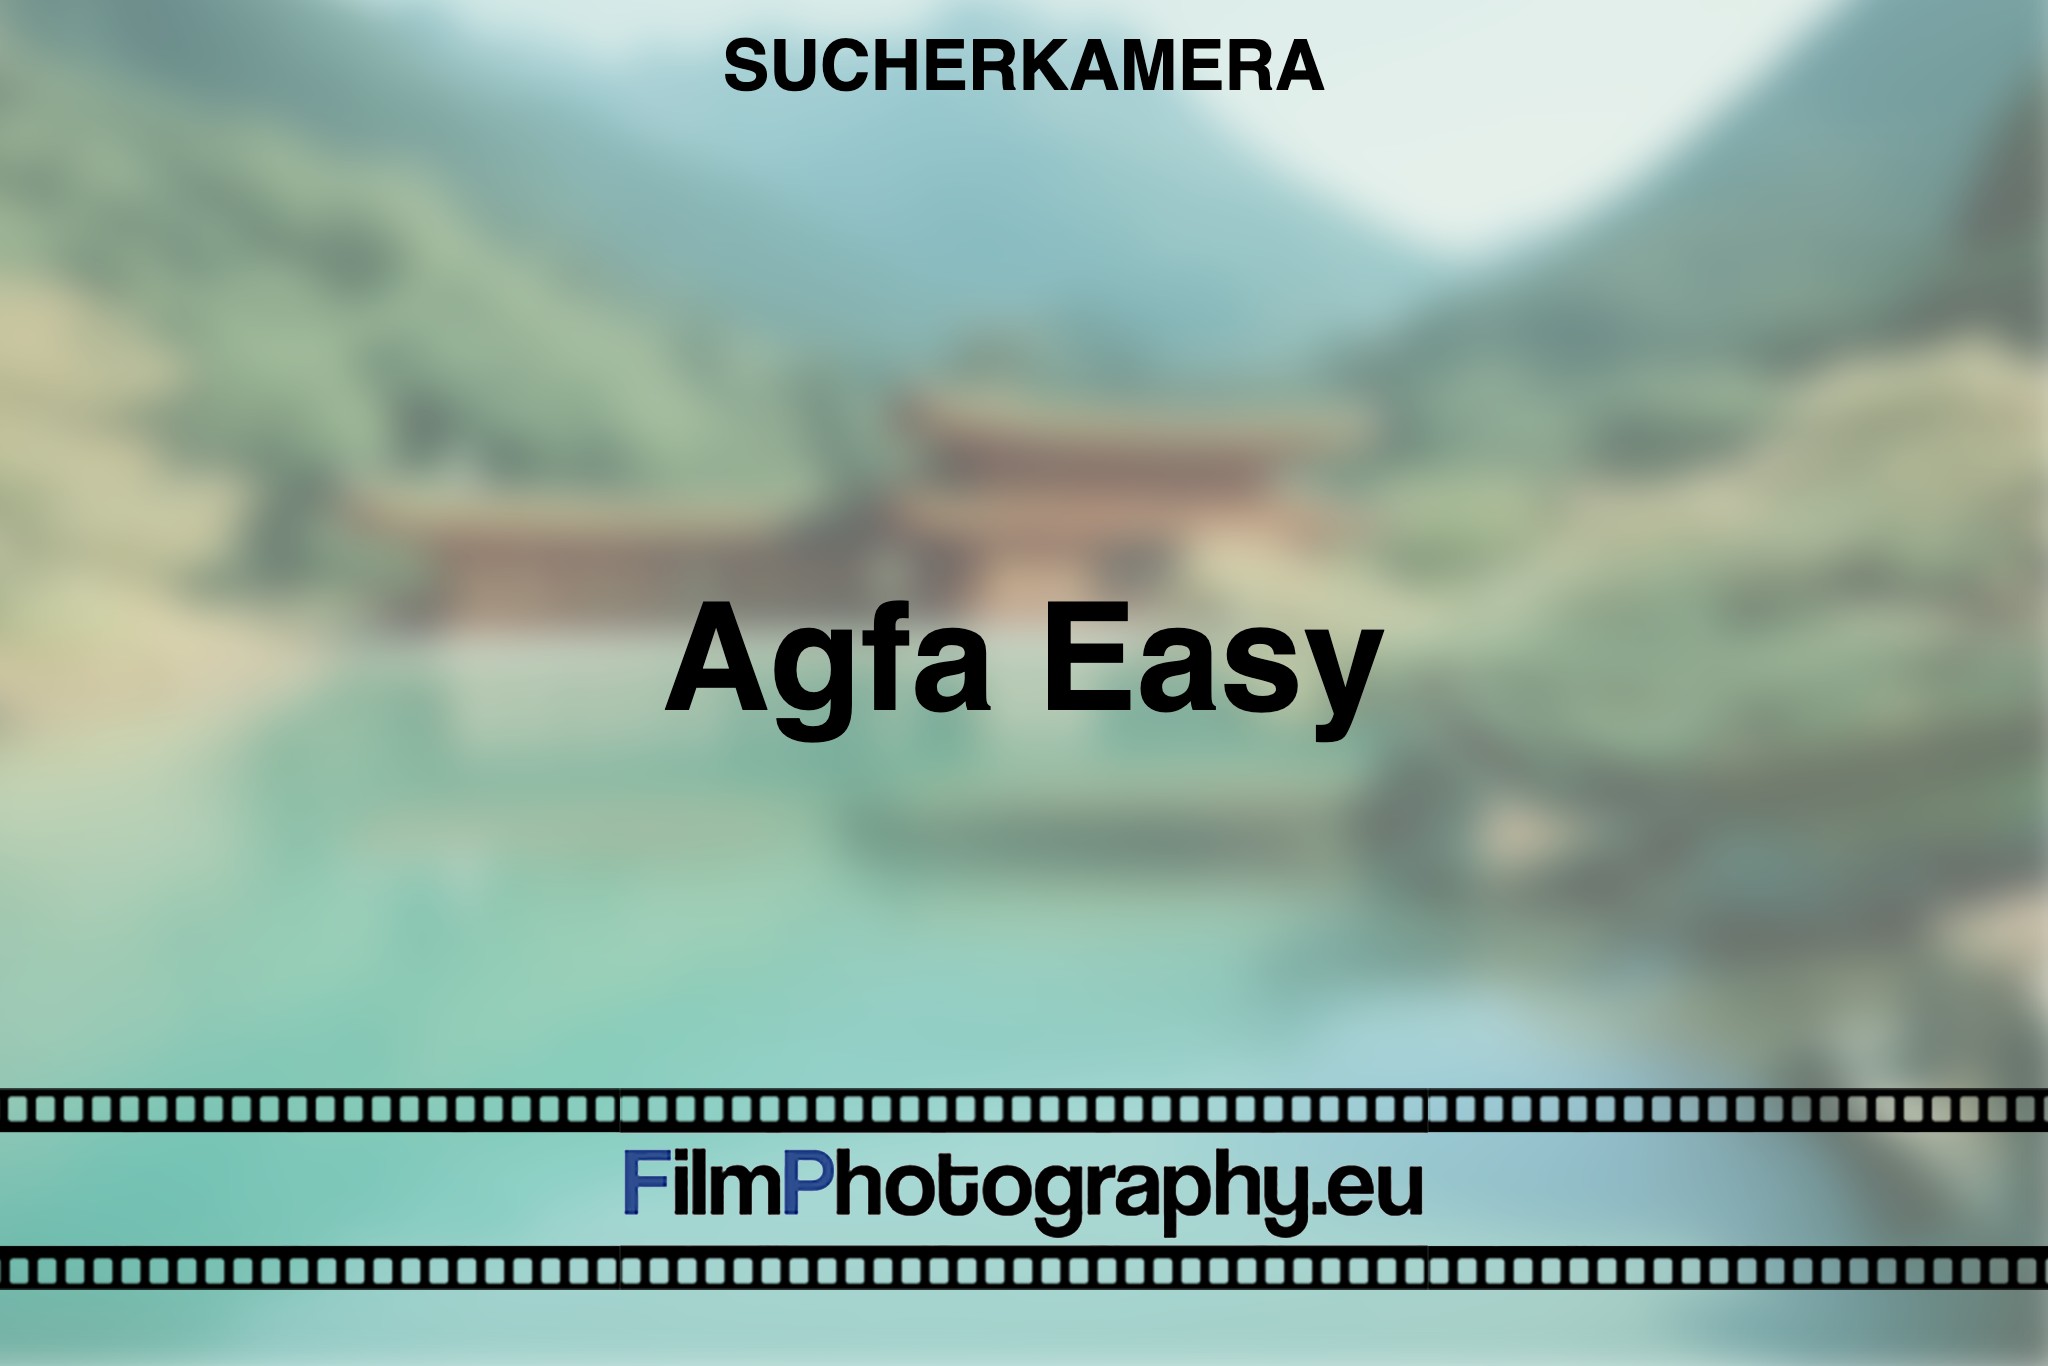 agfa-easy-sucherkamera-bnv